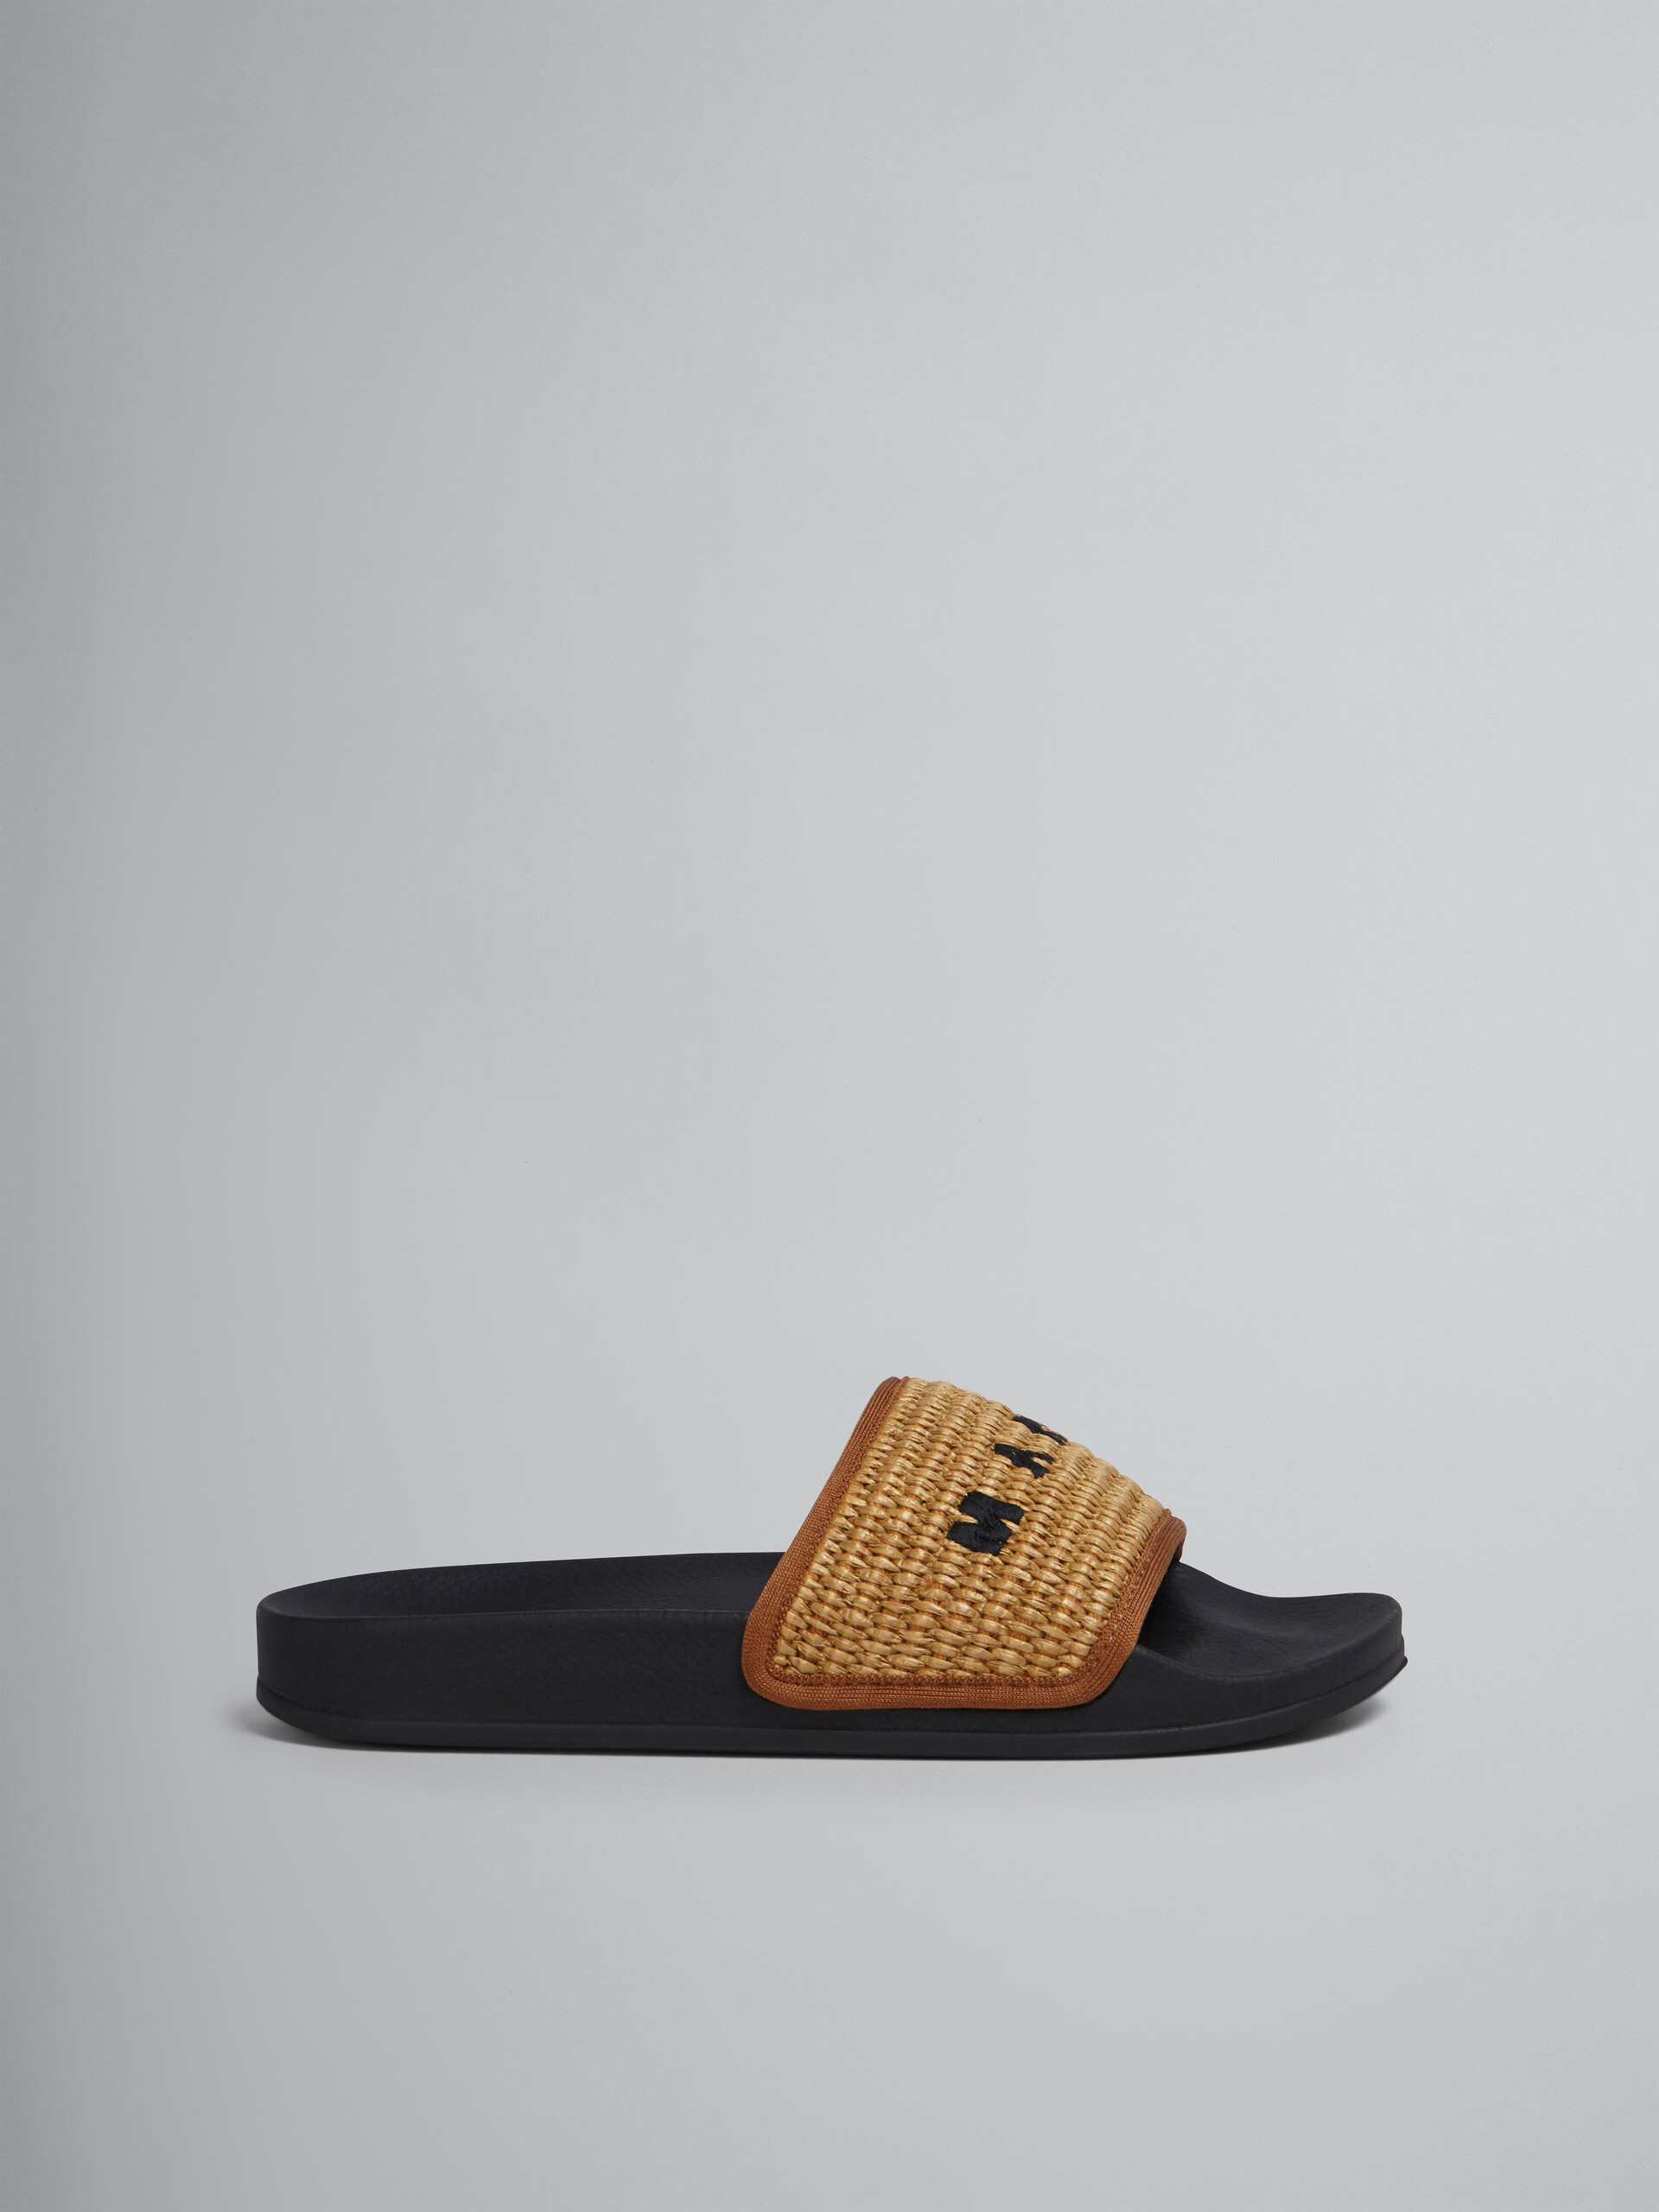 브라운 라피아 샌들 - Sandals - Image 1